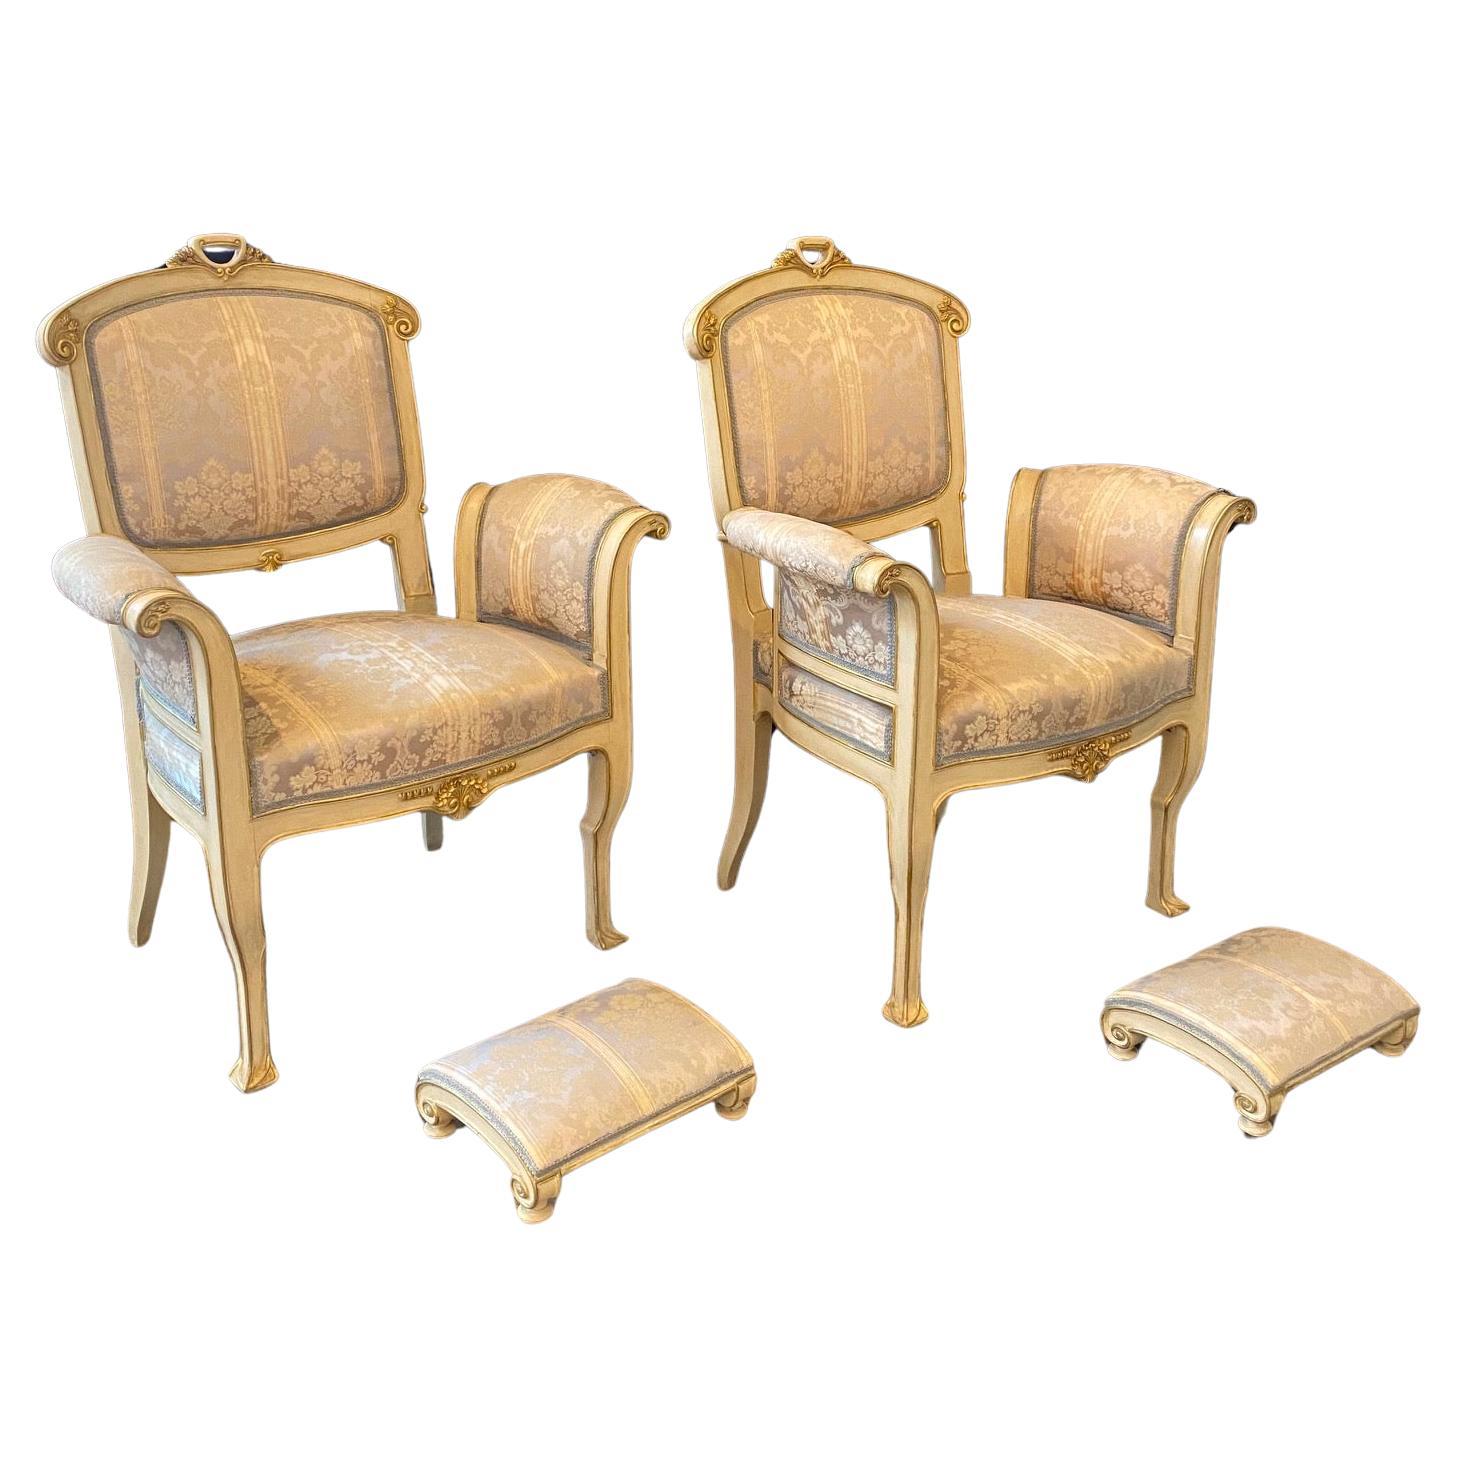 Paire de charmants et élégants fauteuils ou chaises italiennes Art Nouveau avec d'exquis poufs, tous avec un magnifique tissu damassé d'origine à rayures sourdes. Cette pièce fait partie d'un ensemble de 10 pièces Art Nouveau du début du 20e siècle,